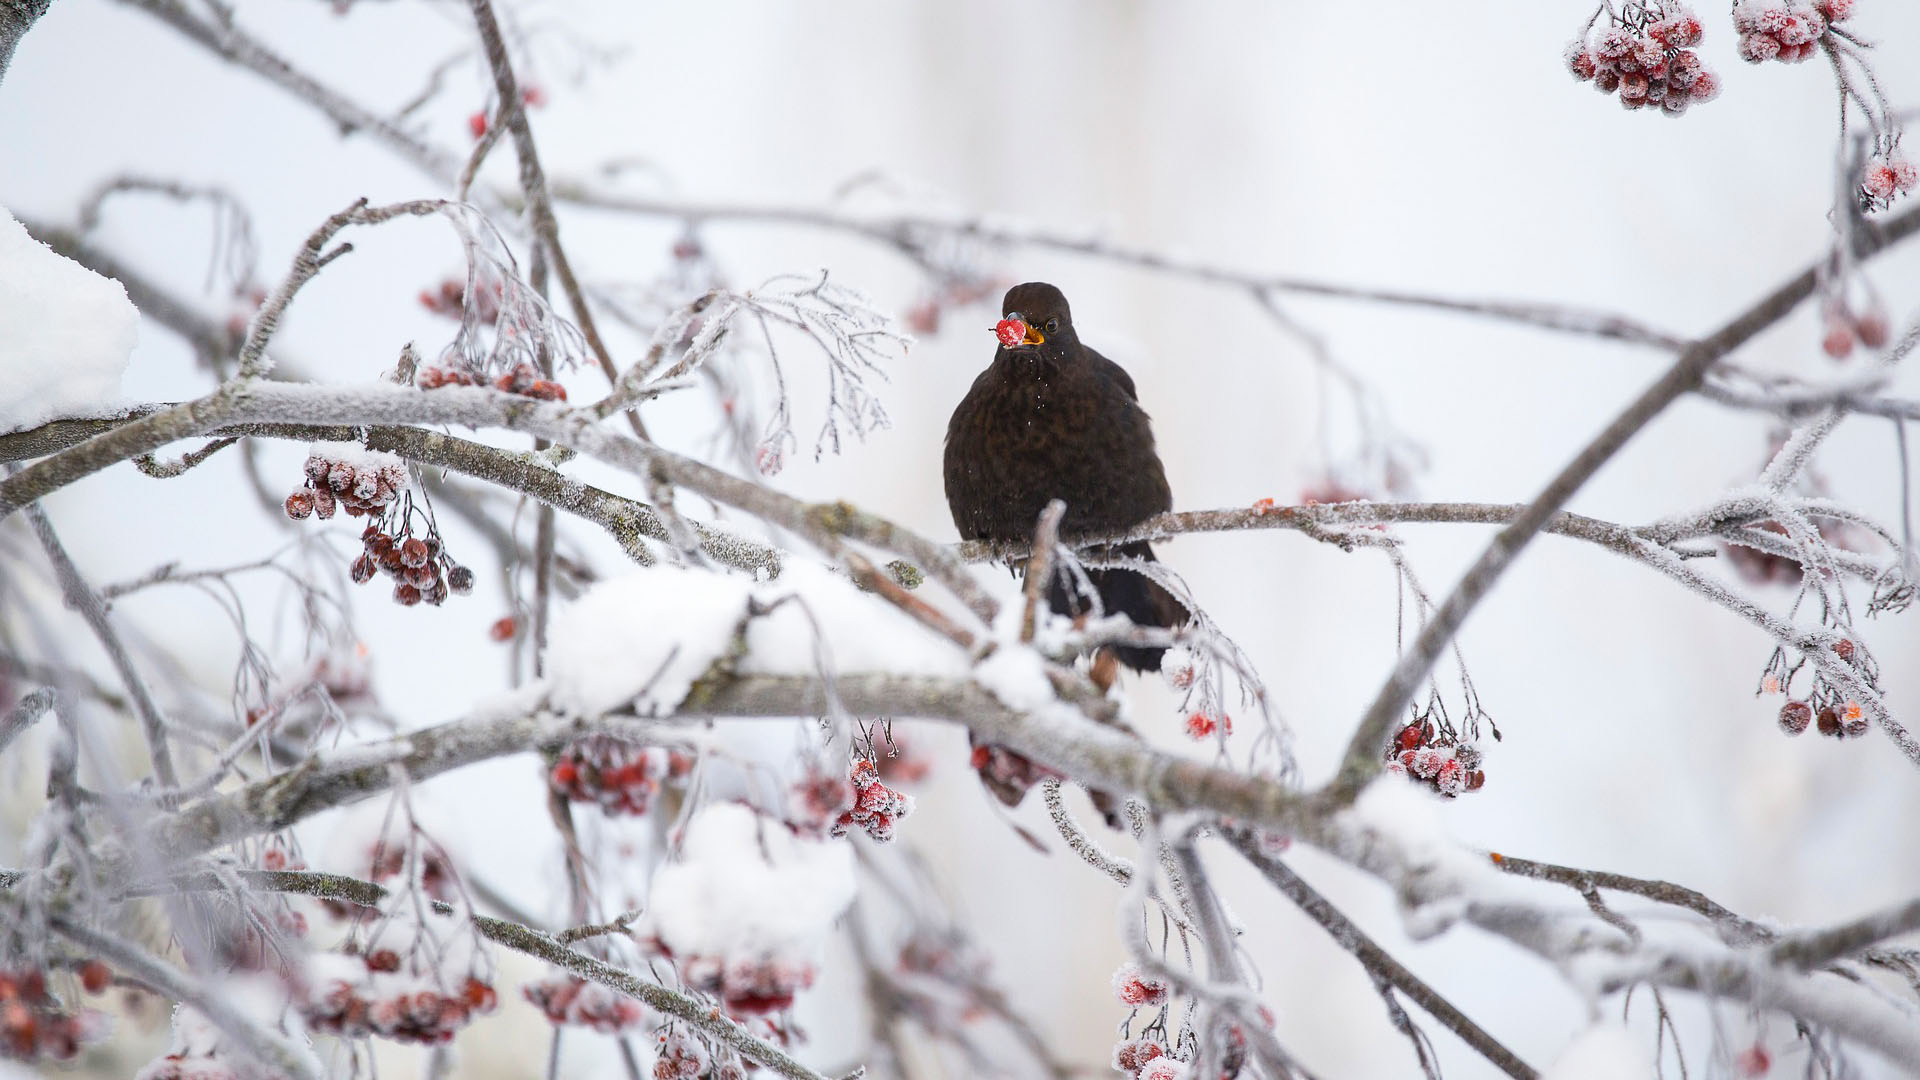 Amsel auf einer Eberesche im Winter (Bild: PenjaK, pixabay.com)